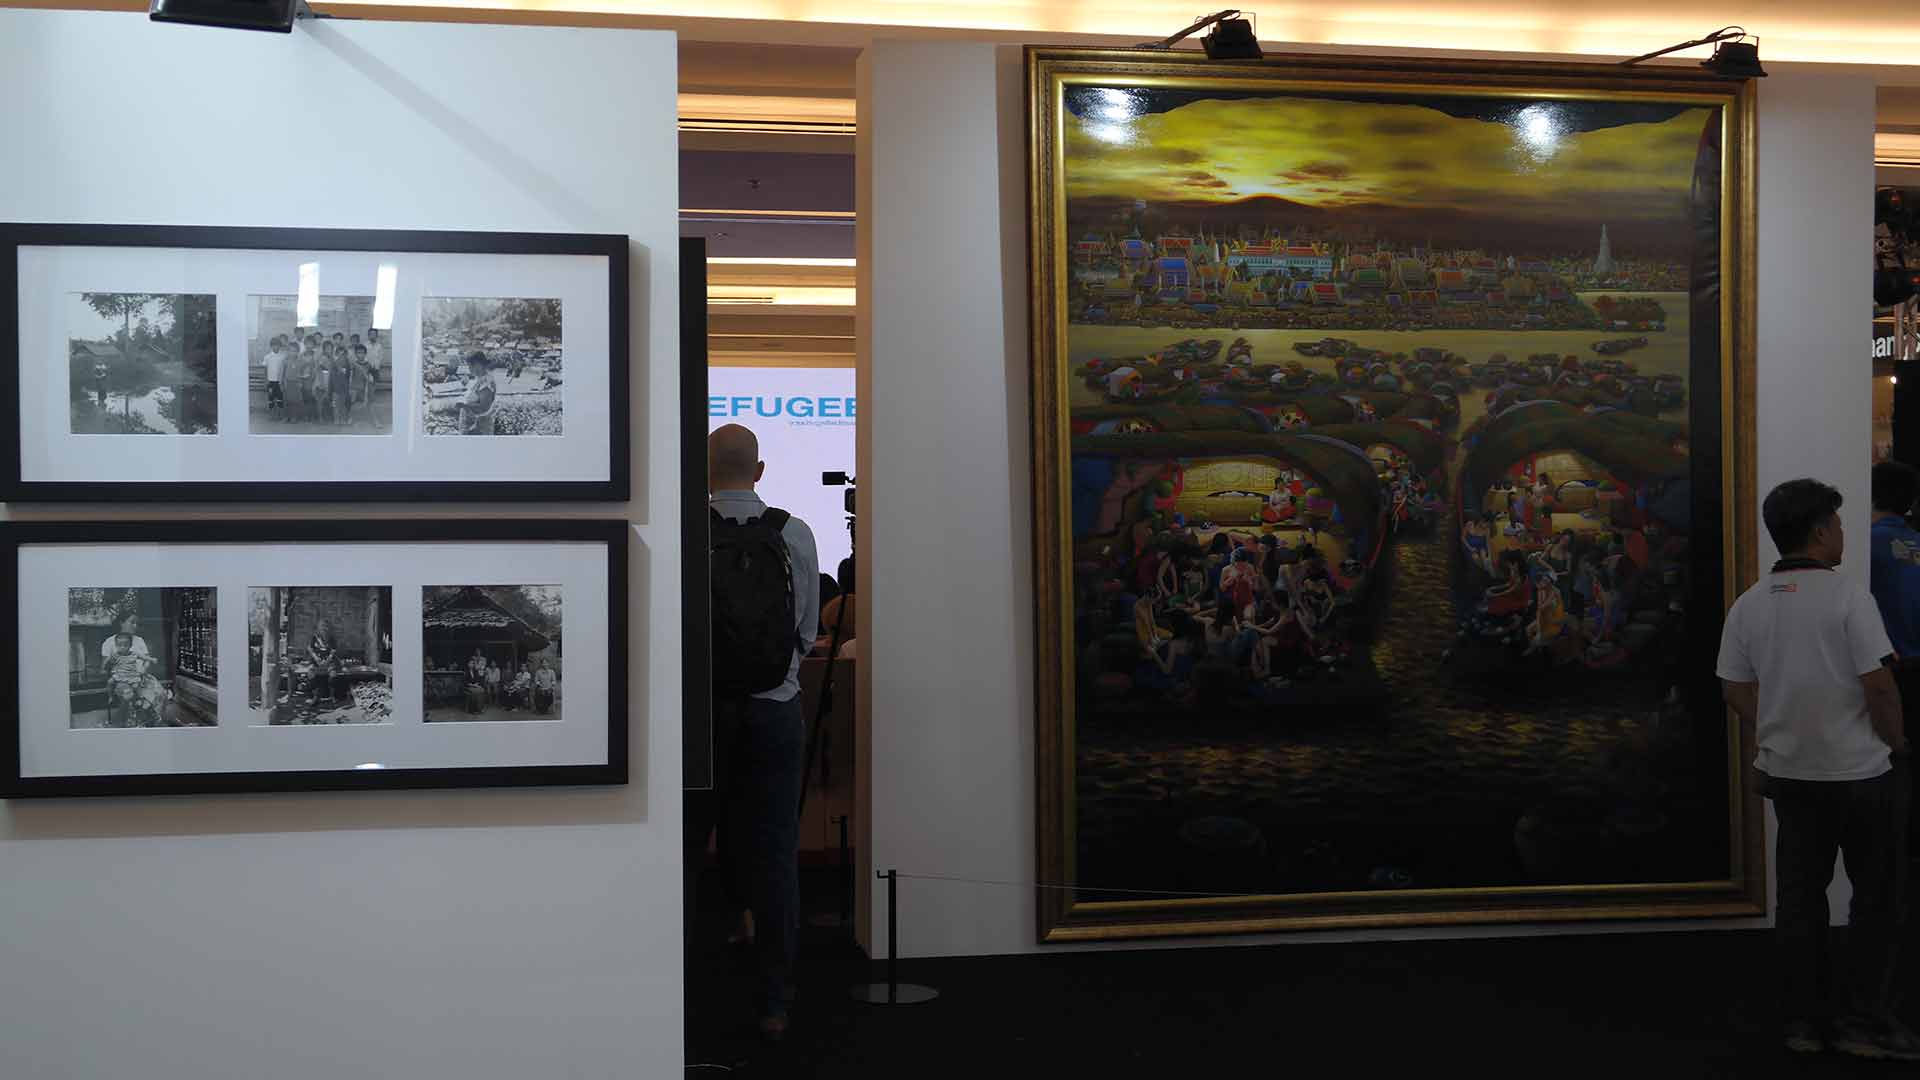 Exhibition Art Auction for Refugees by UNHCR and Venerable Vudhijaya Vajiramedhi | นิทรรศการ งานประมูลศิลปกรรมเพื่อผู้ลี้ภัย โดย สำนักงานข้าหลวงใหญ่ผู้ลี้ภัยแห่งสหประชาชาติร่วมกับท่าน ว.วชิรเมธี